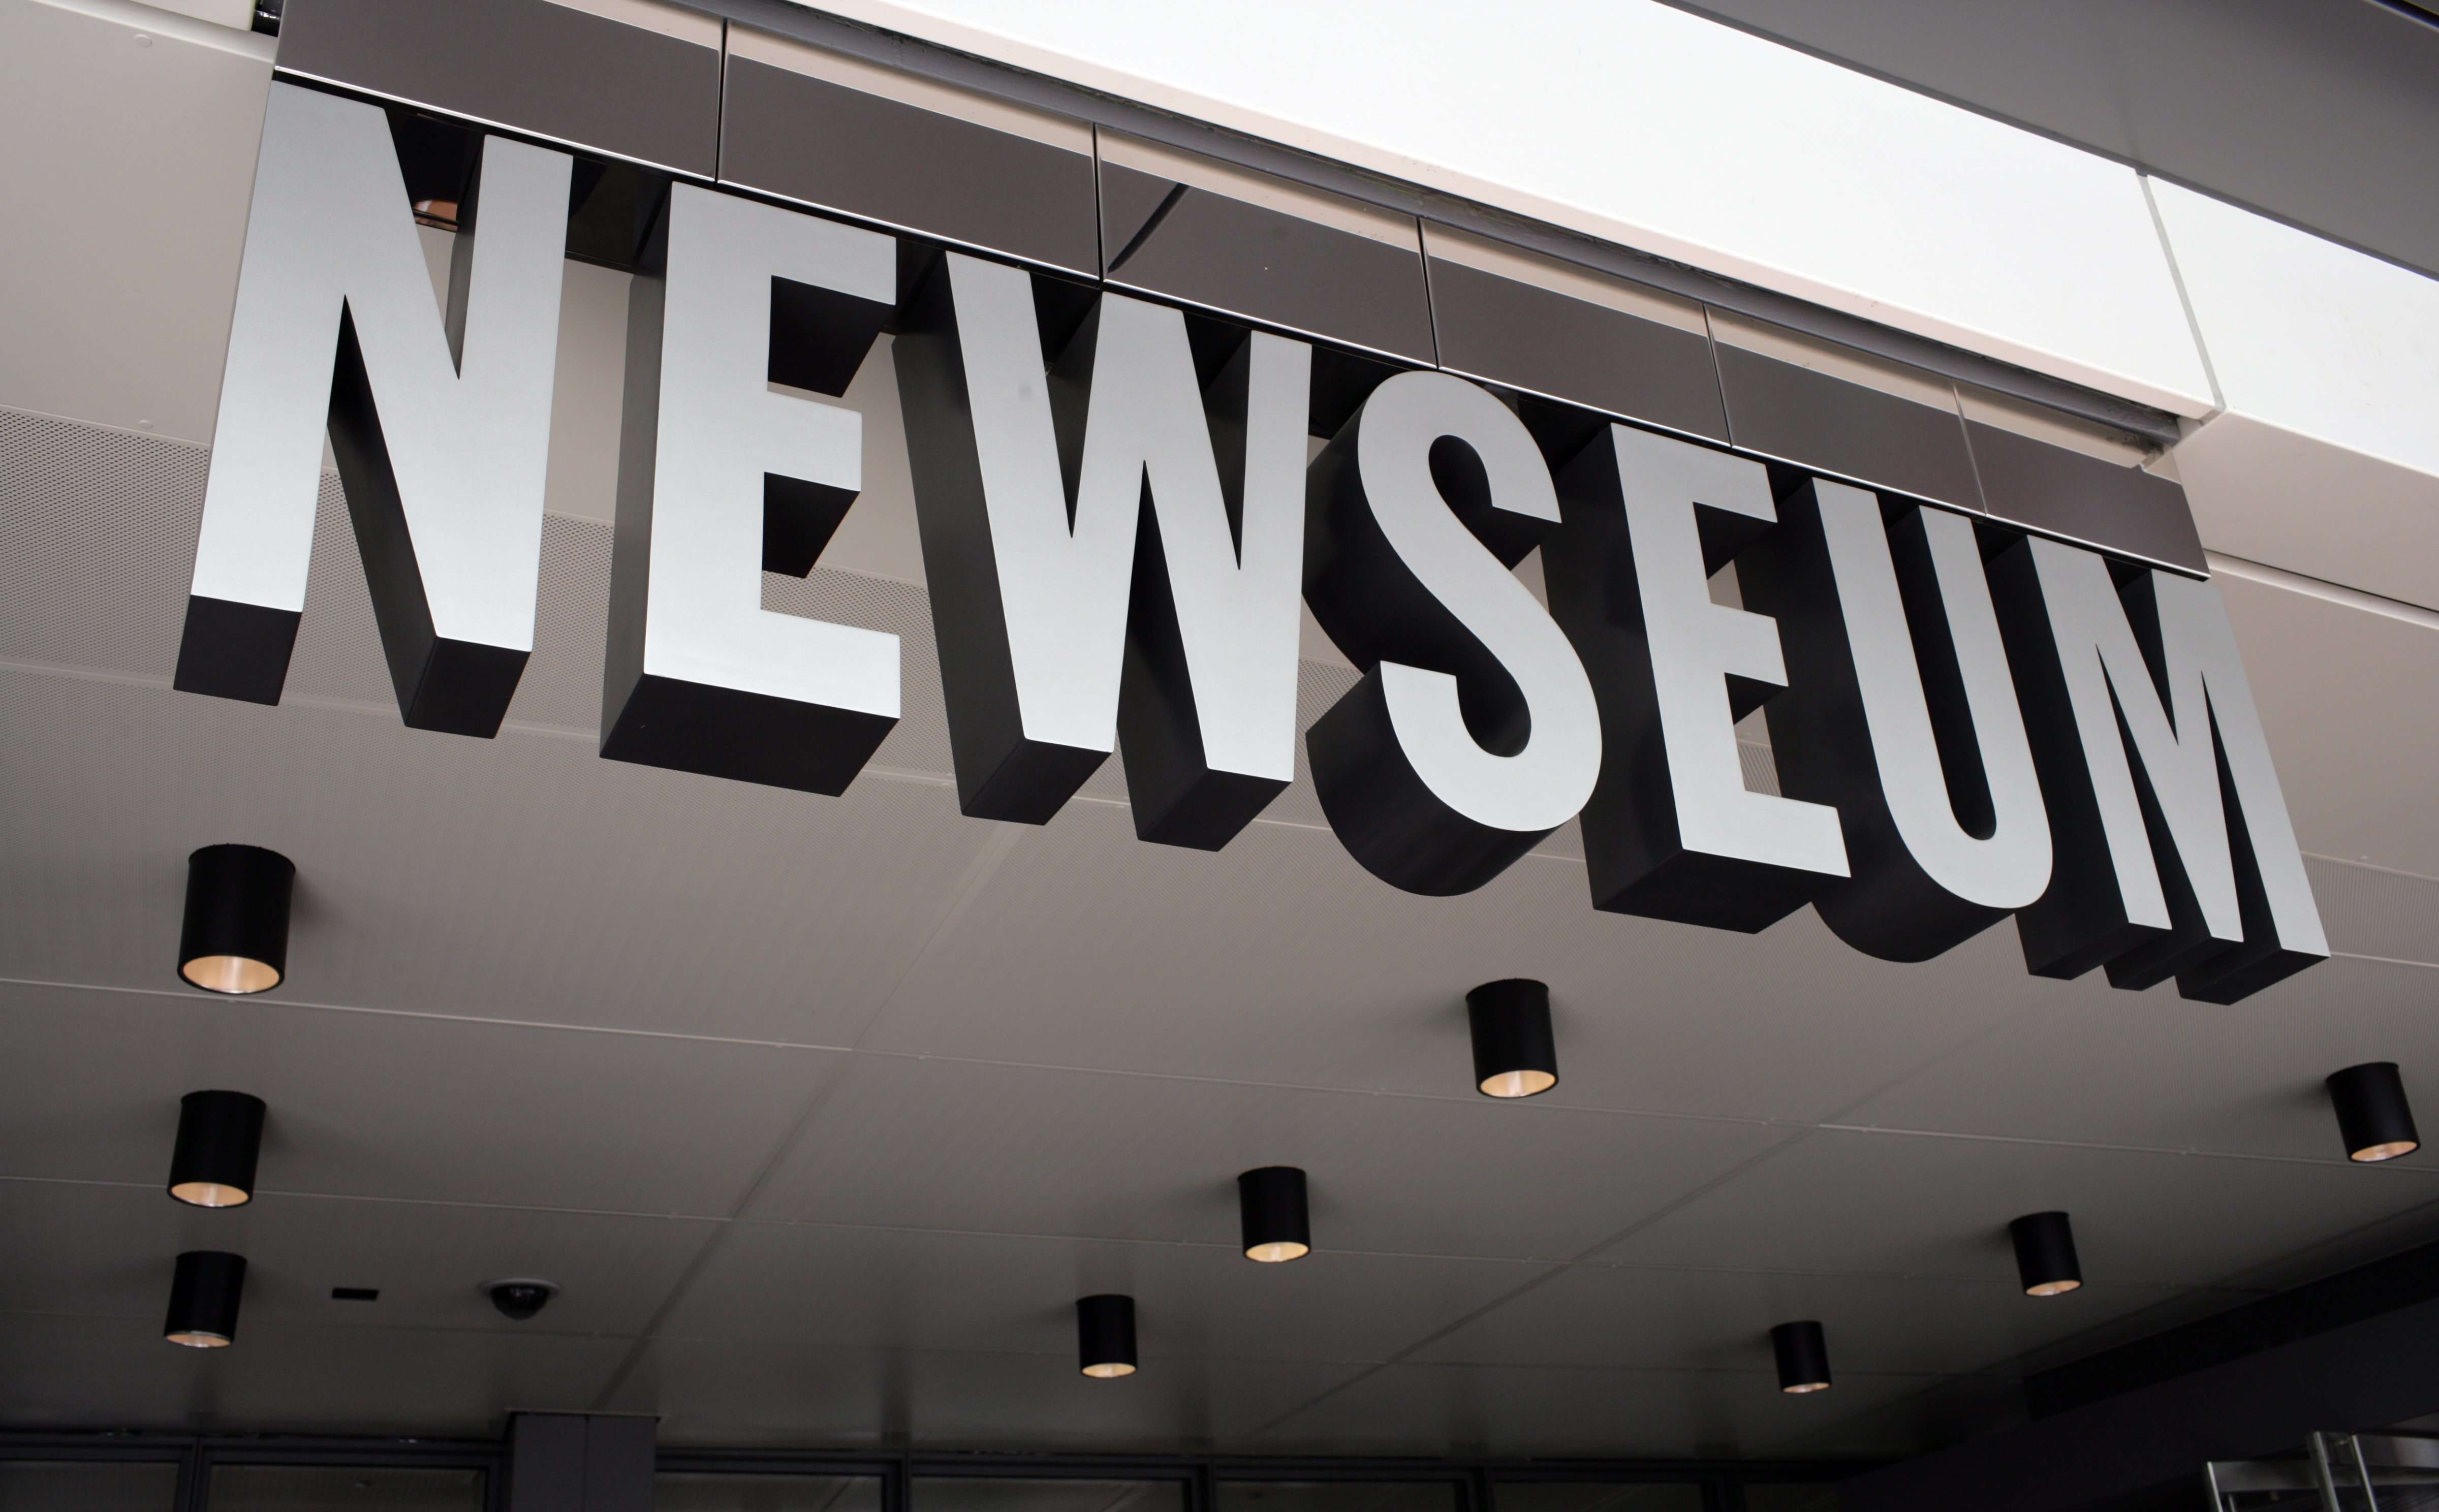 Entrance of Newseum. (Thomas Koehler&mdash;Photothek via Getty Images)